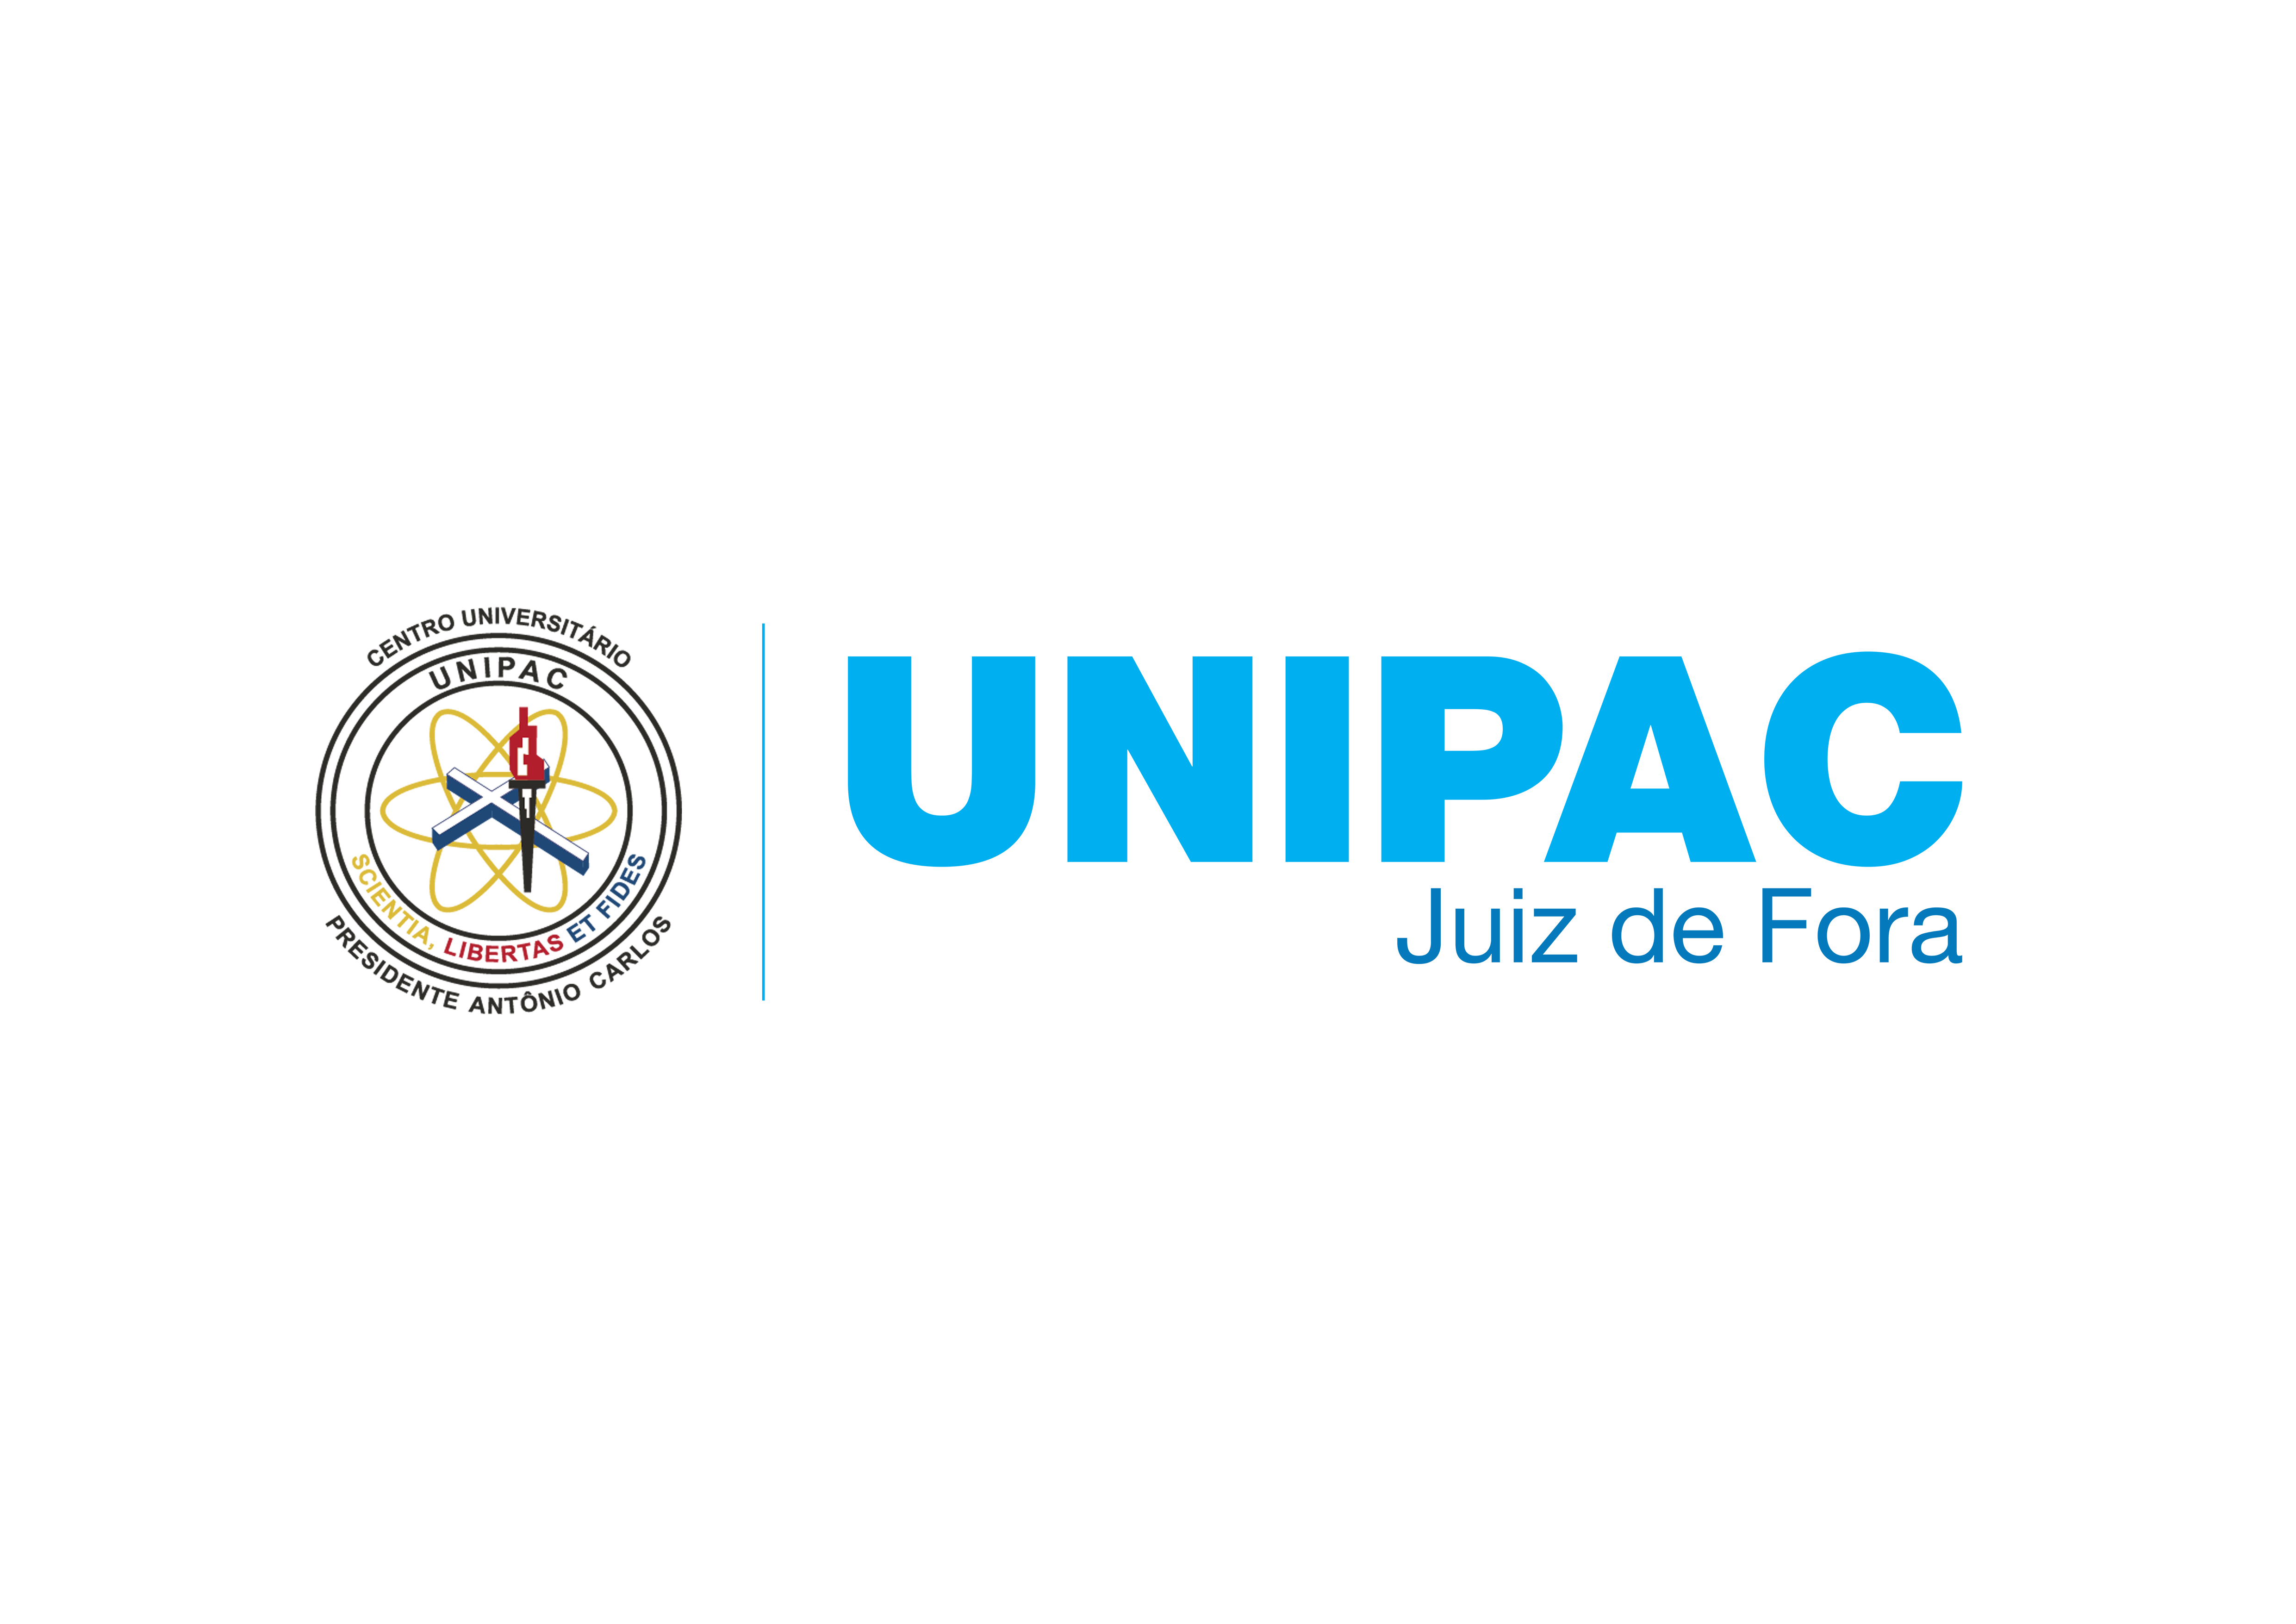 Unipac